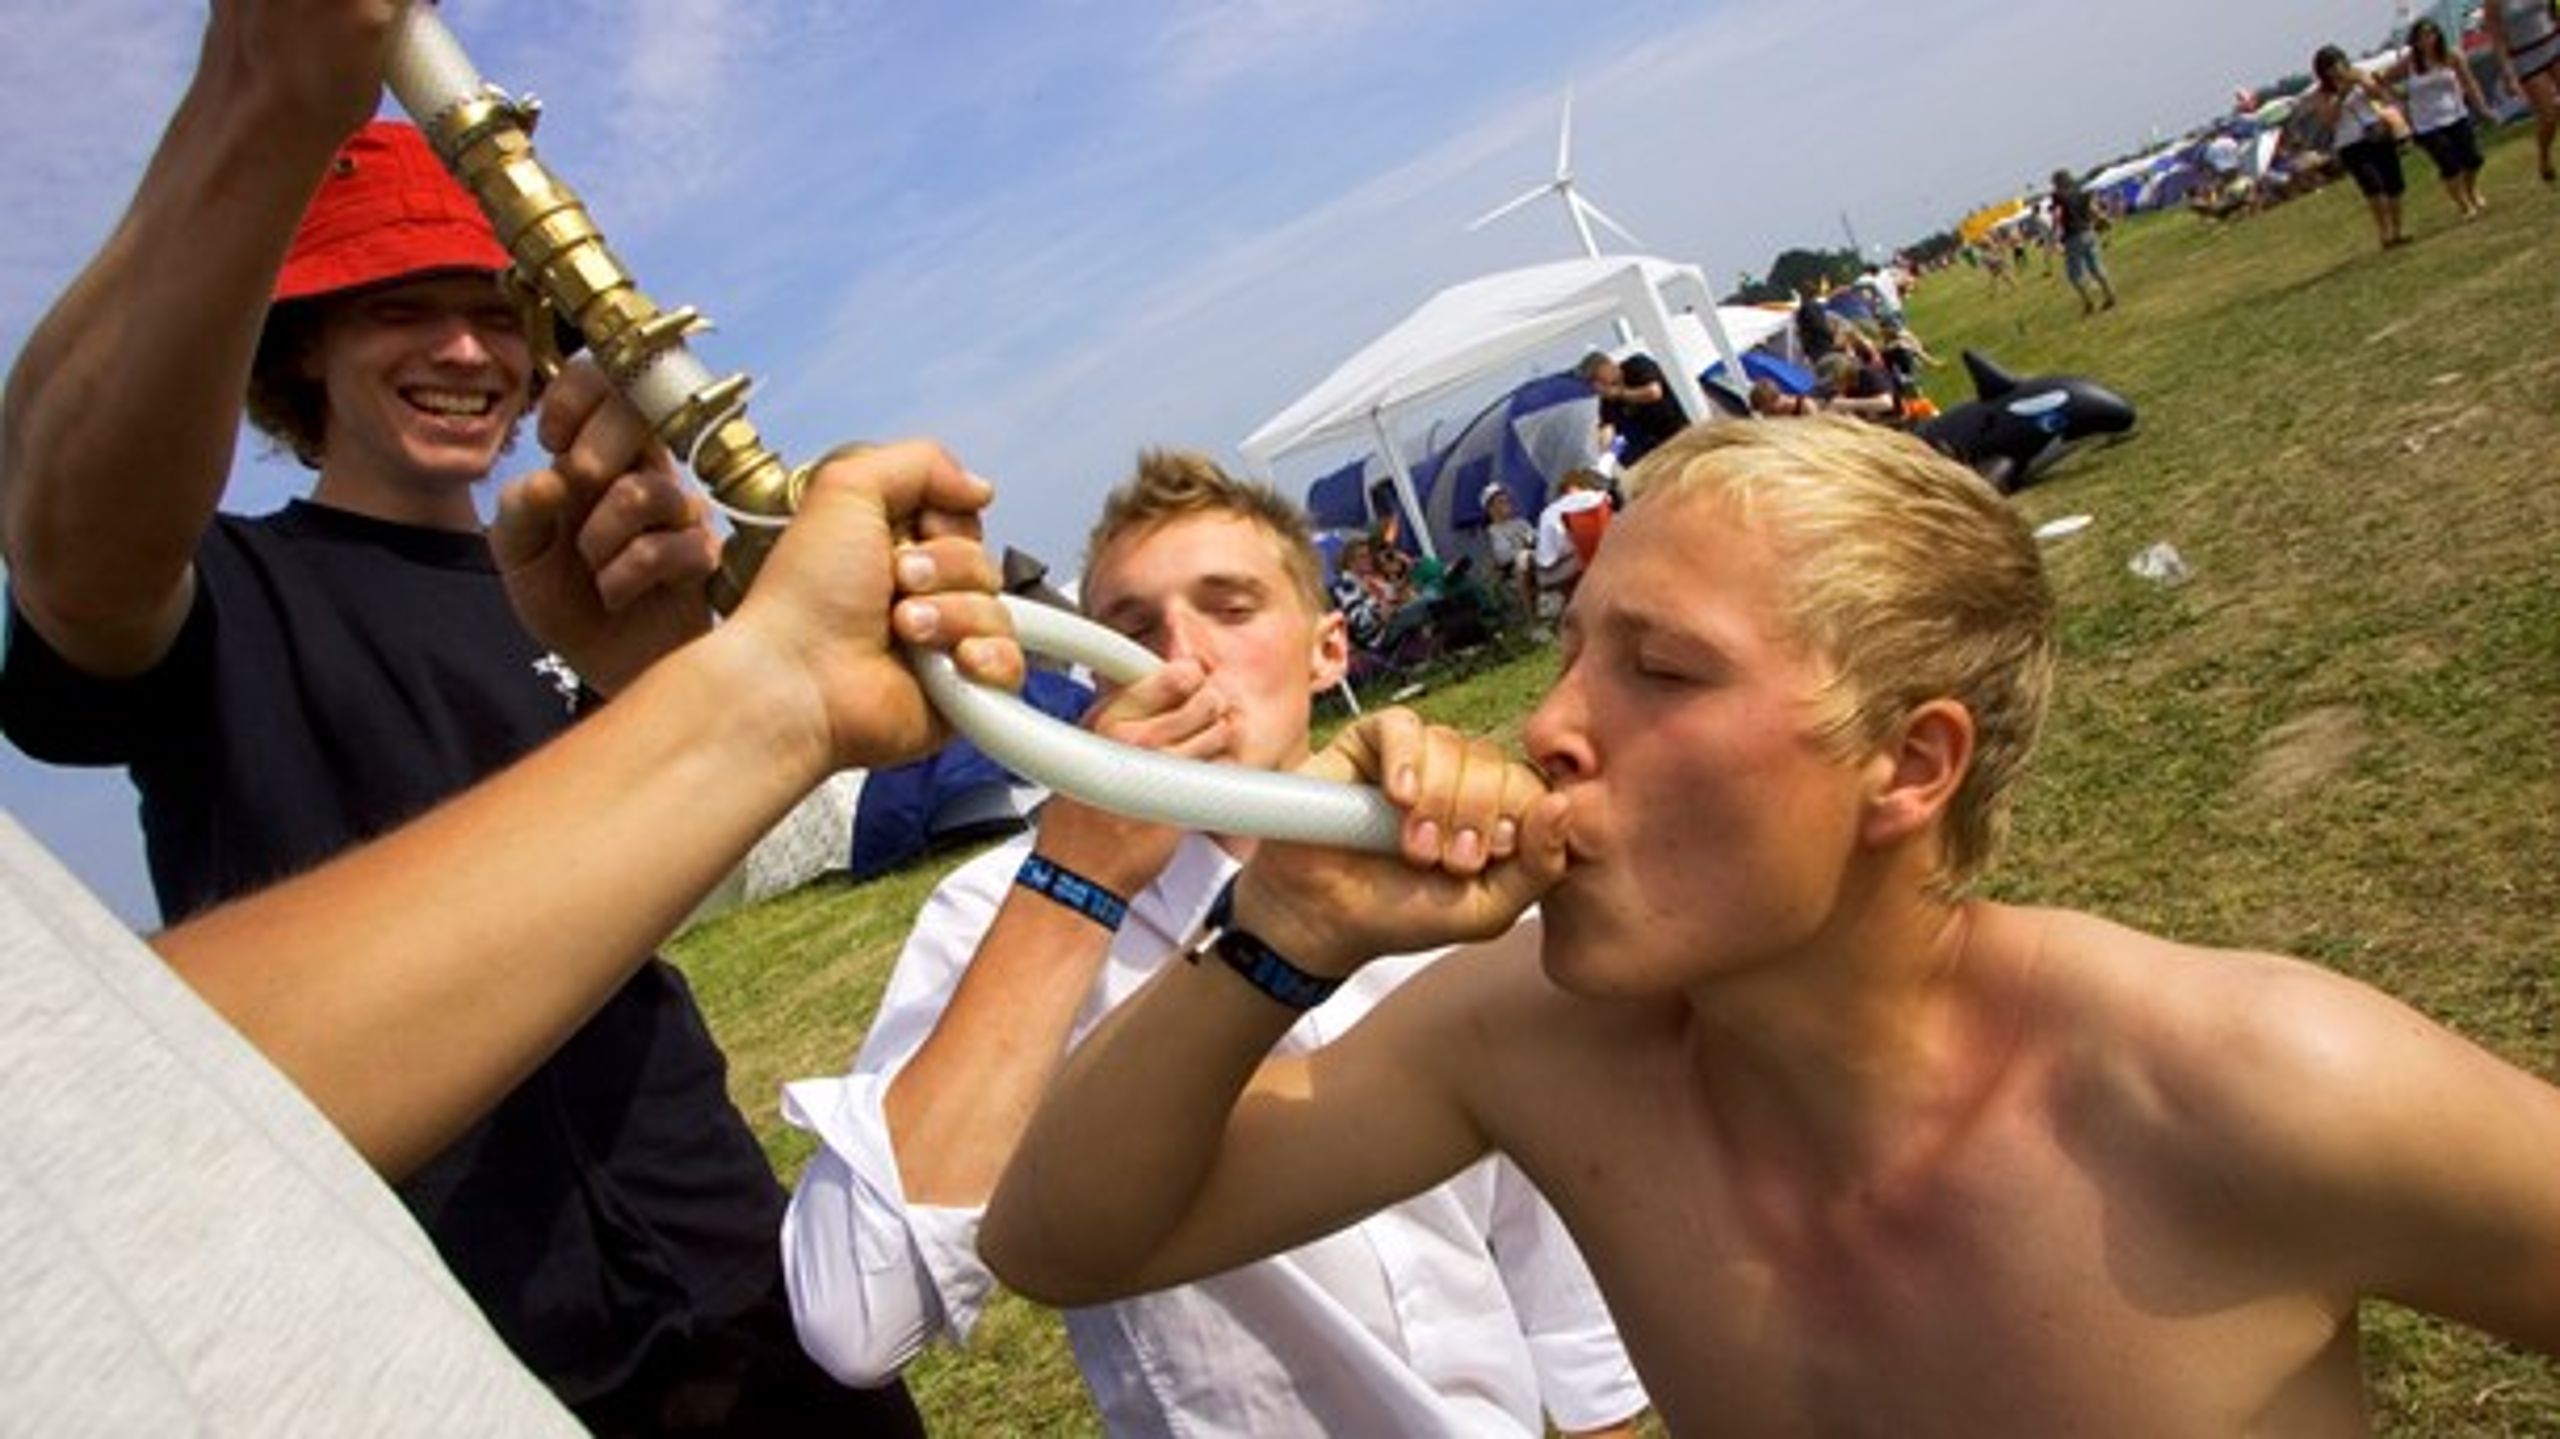 Hver fjerde danske gymnasieelev har drukket mere end&nbsp;fem genstande&nbsp;mindst fire gange inden for de seneste 30 dage, viser tal fra Ungdomsprofilen.